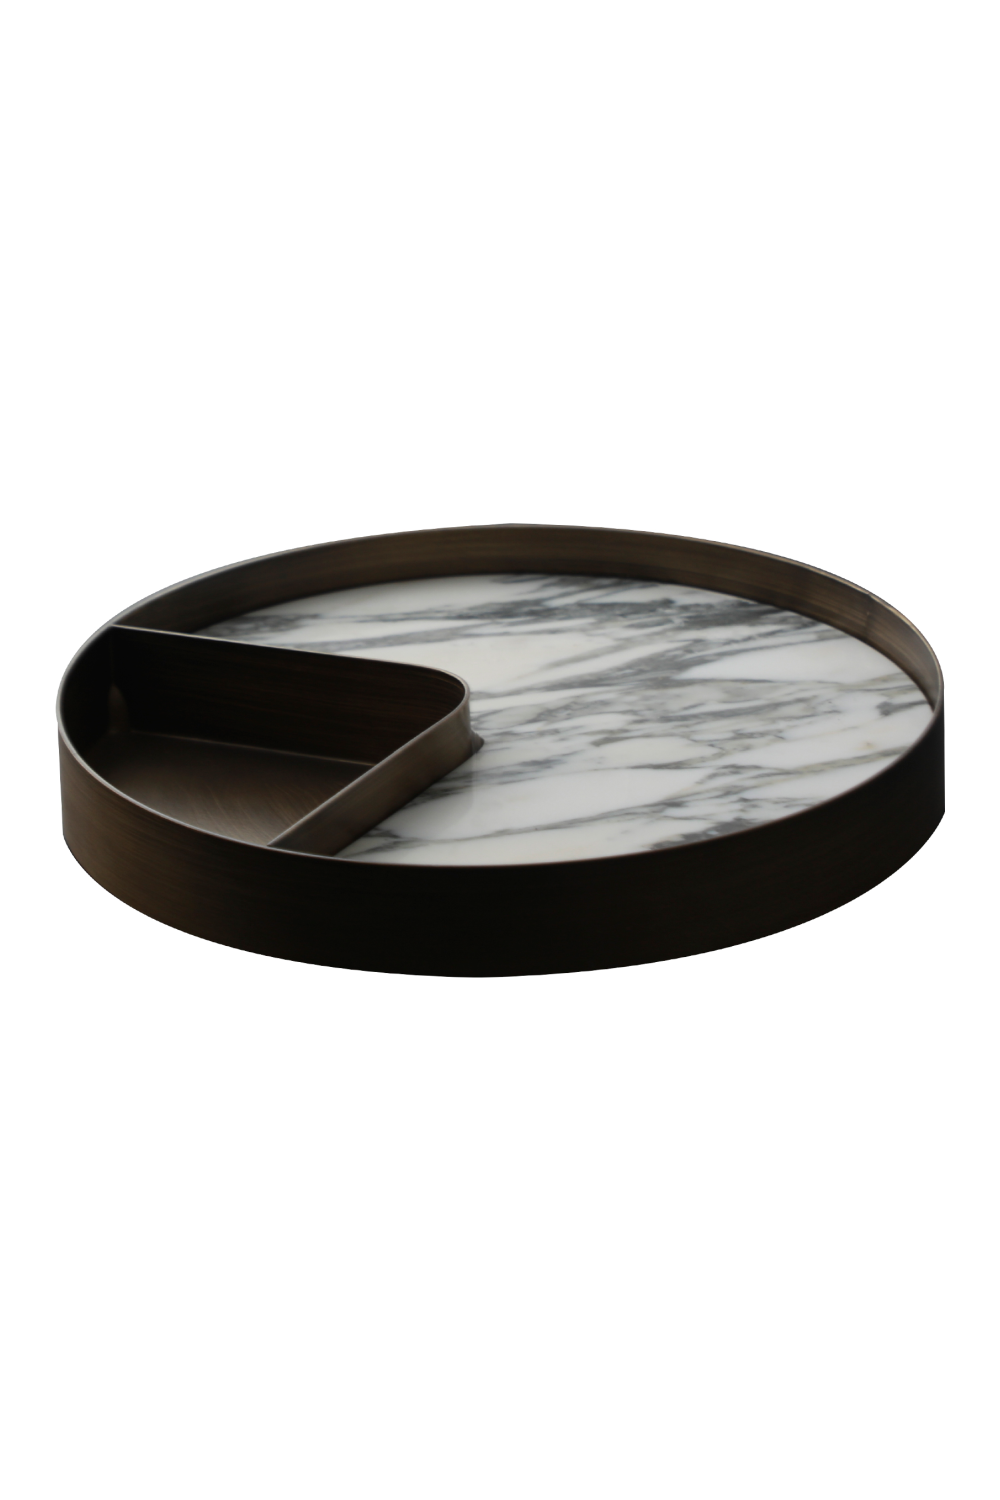 Iron Framed White Marble Tray | Liang & Eimil Alden | OROA.com